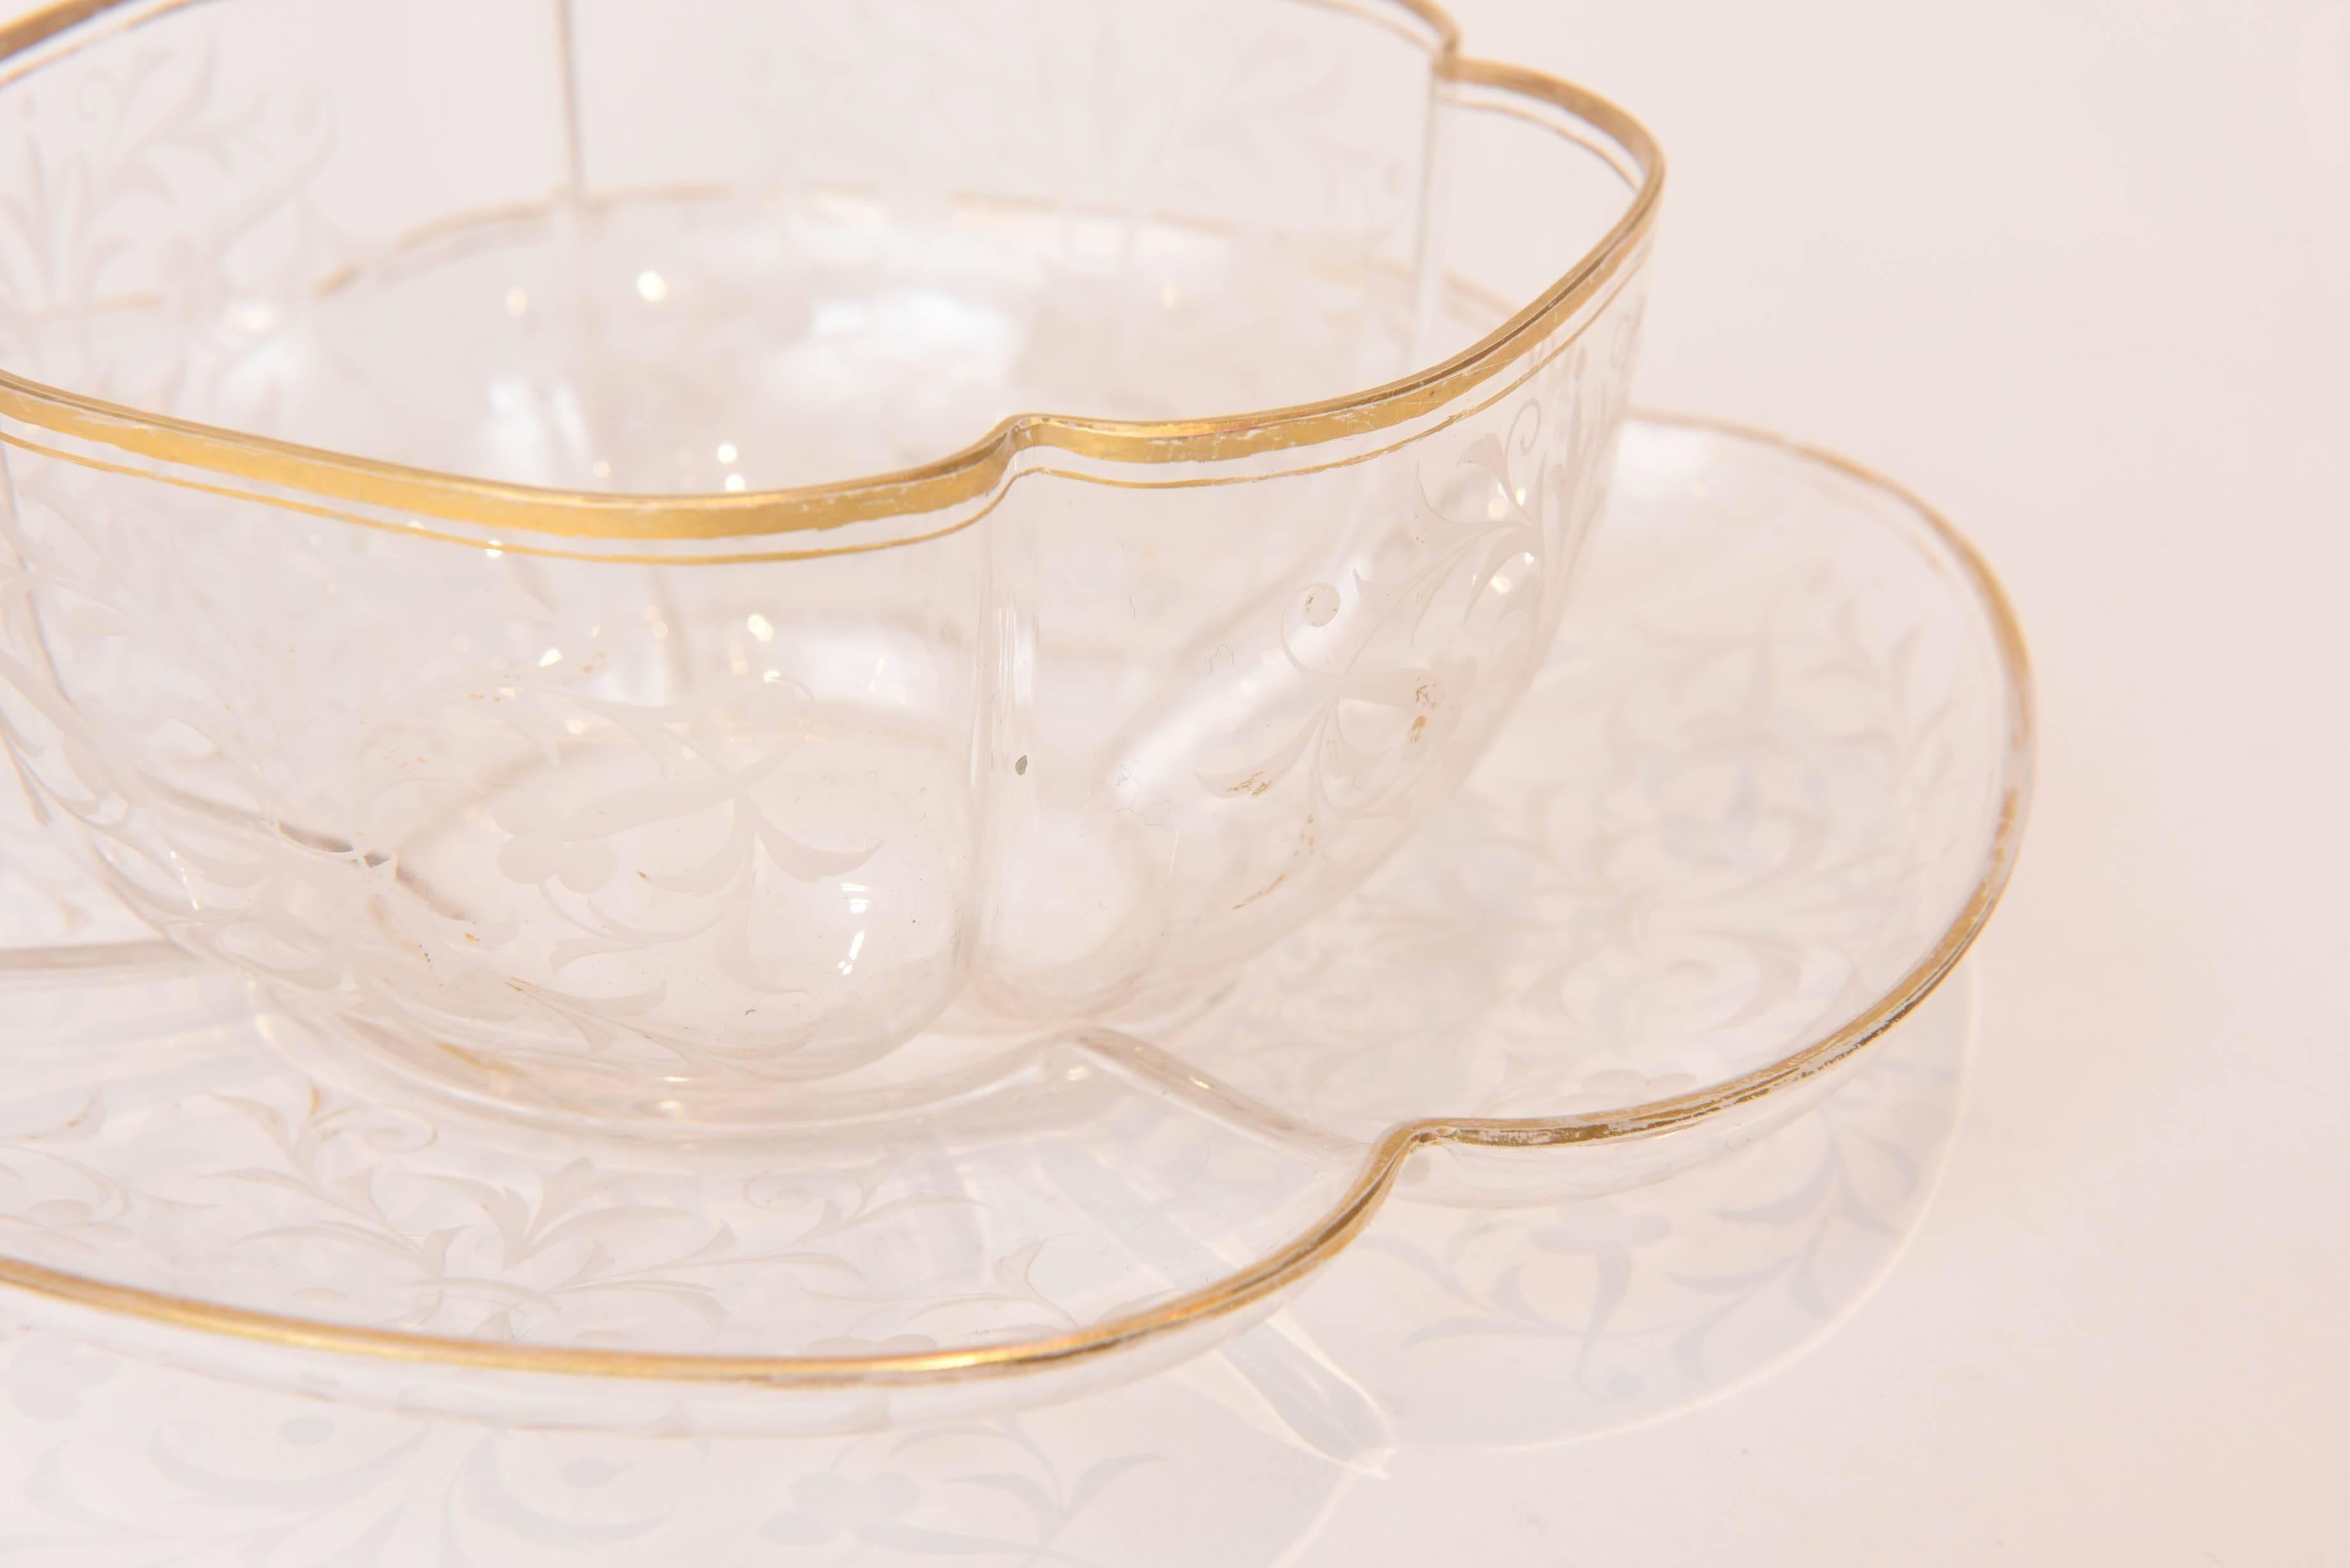 Ten Exquisite Sets of Antique Moser Quatre Foil Bowls with Underplates 2